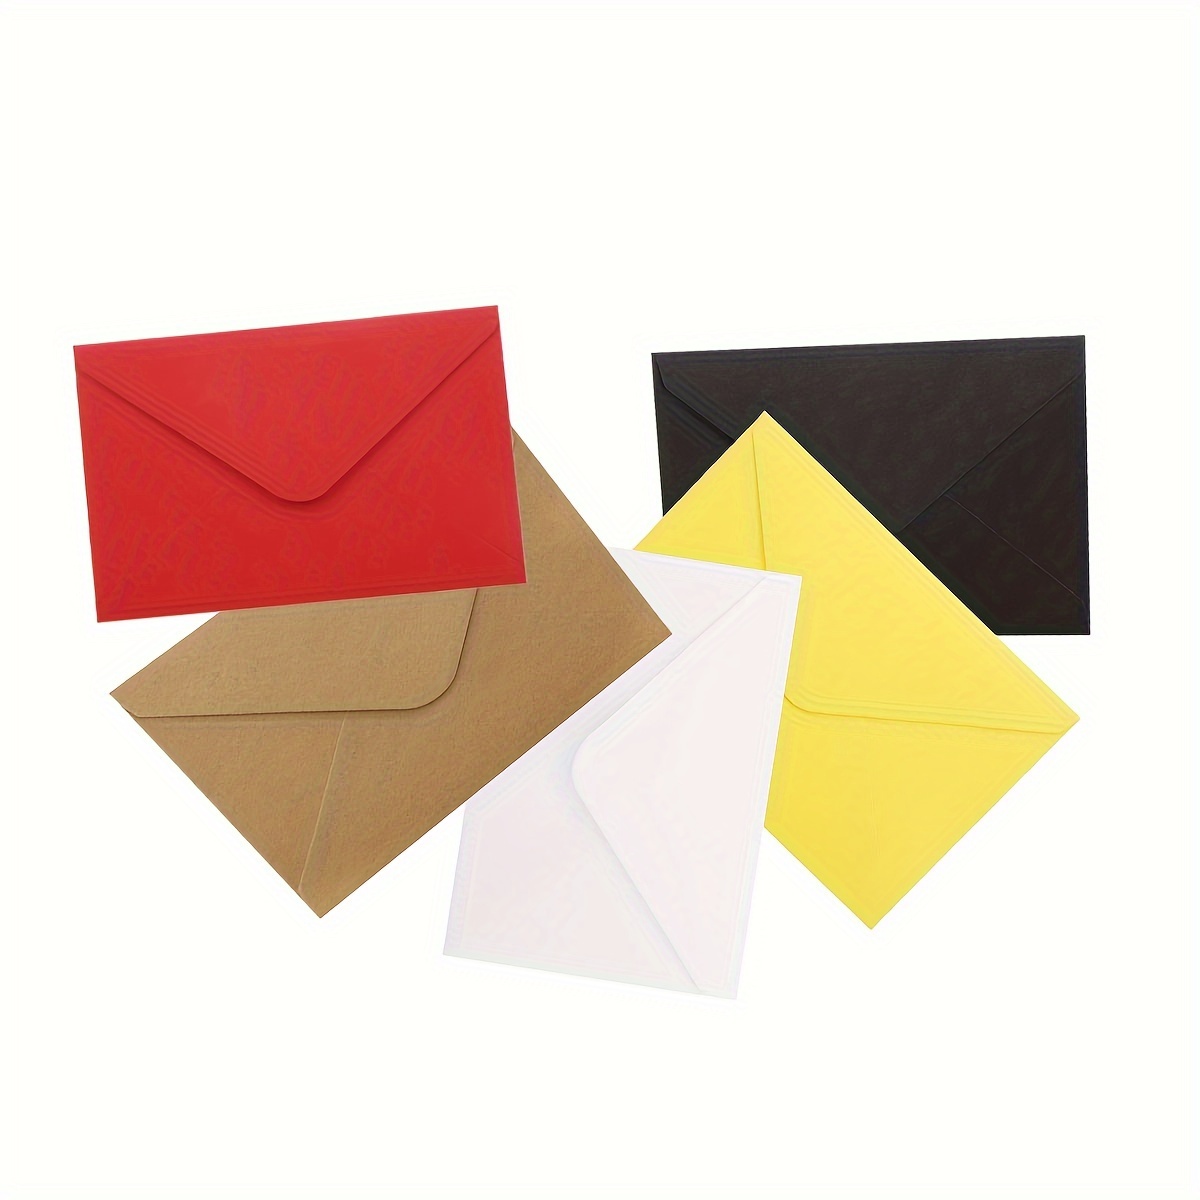 100Pcs Mini Enveloppes Kraft Enveloppes Kraft Marron pour Cartes